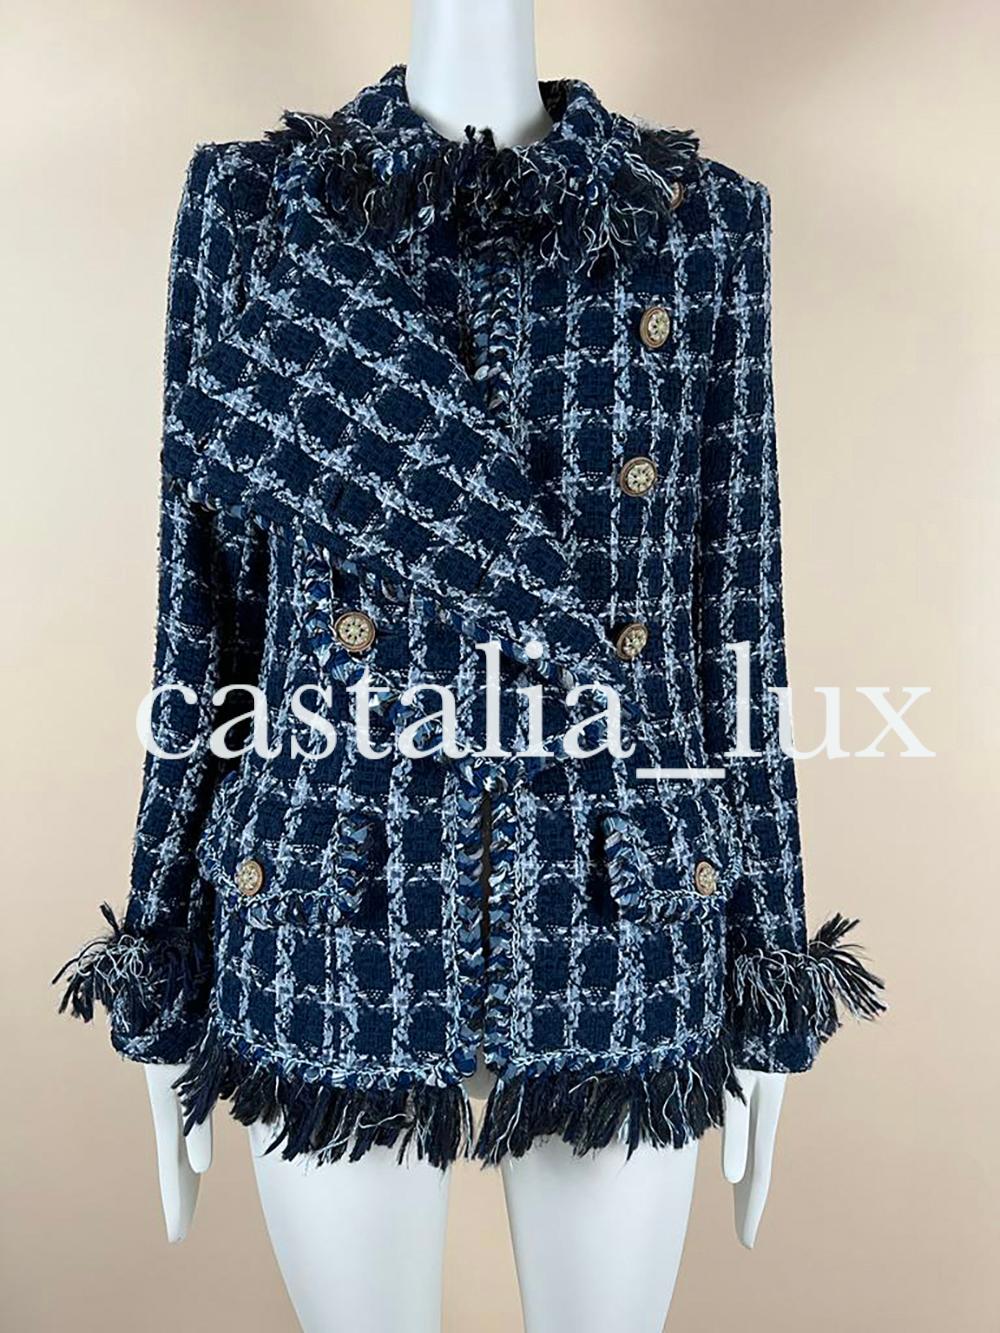 Chanel 11K$ Paris / Dallas Runway Tweed Jacket For Sale 2